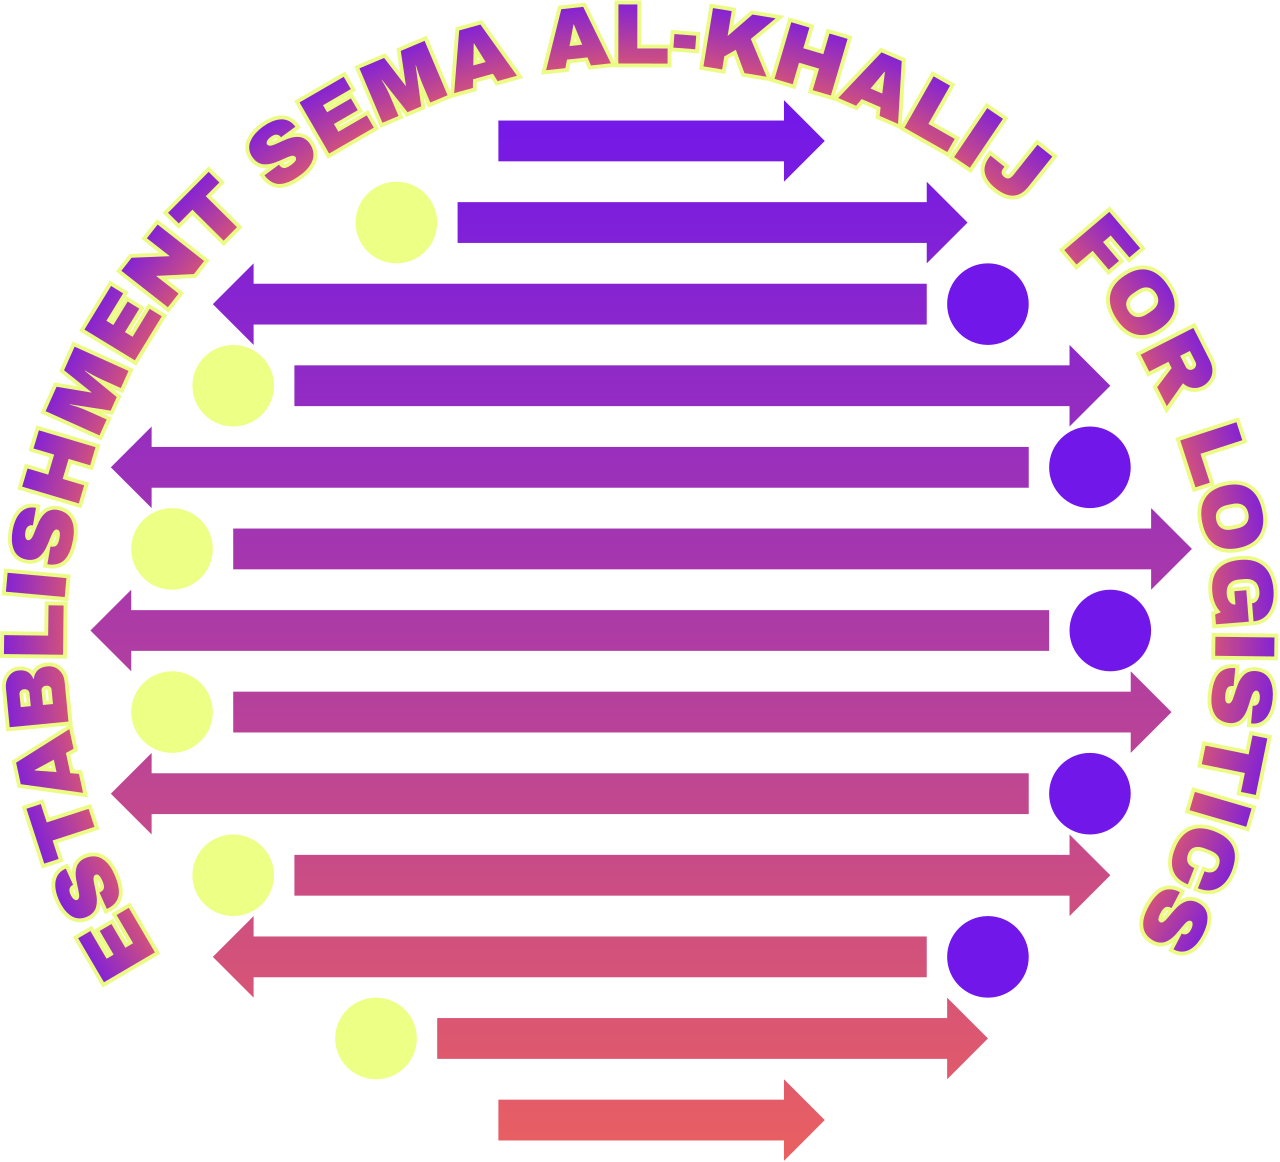 ESTABLISHMENT SEMA AL-KHALIJ  FOR LOGISTICS 's web page